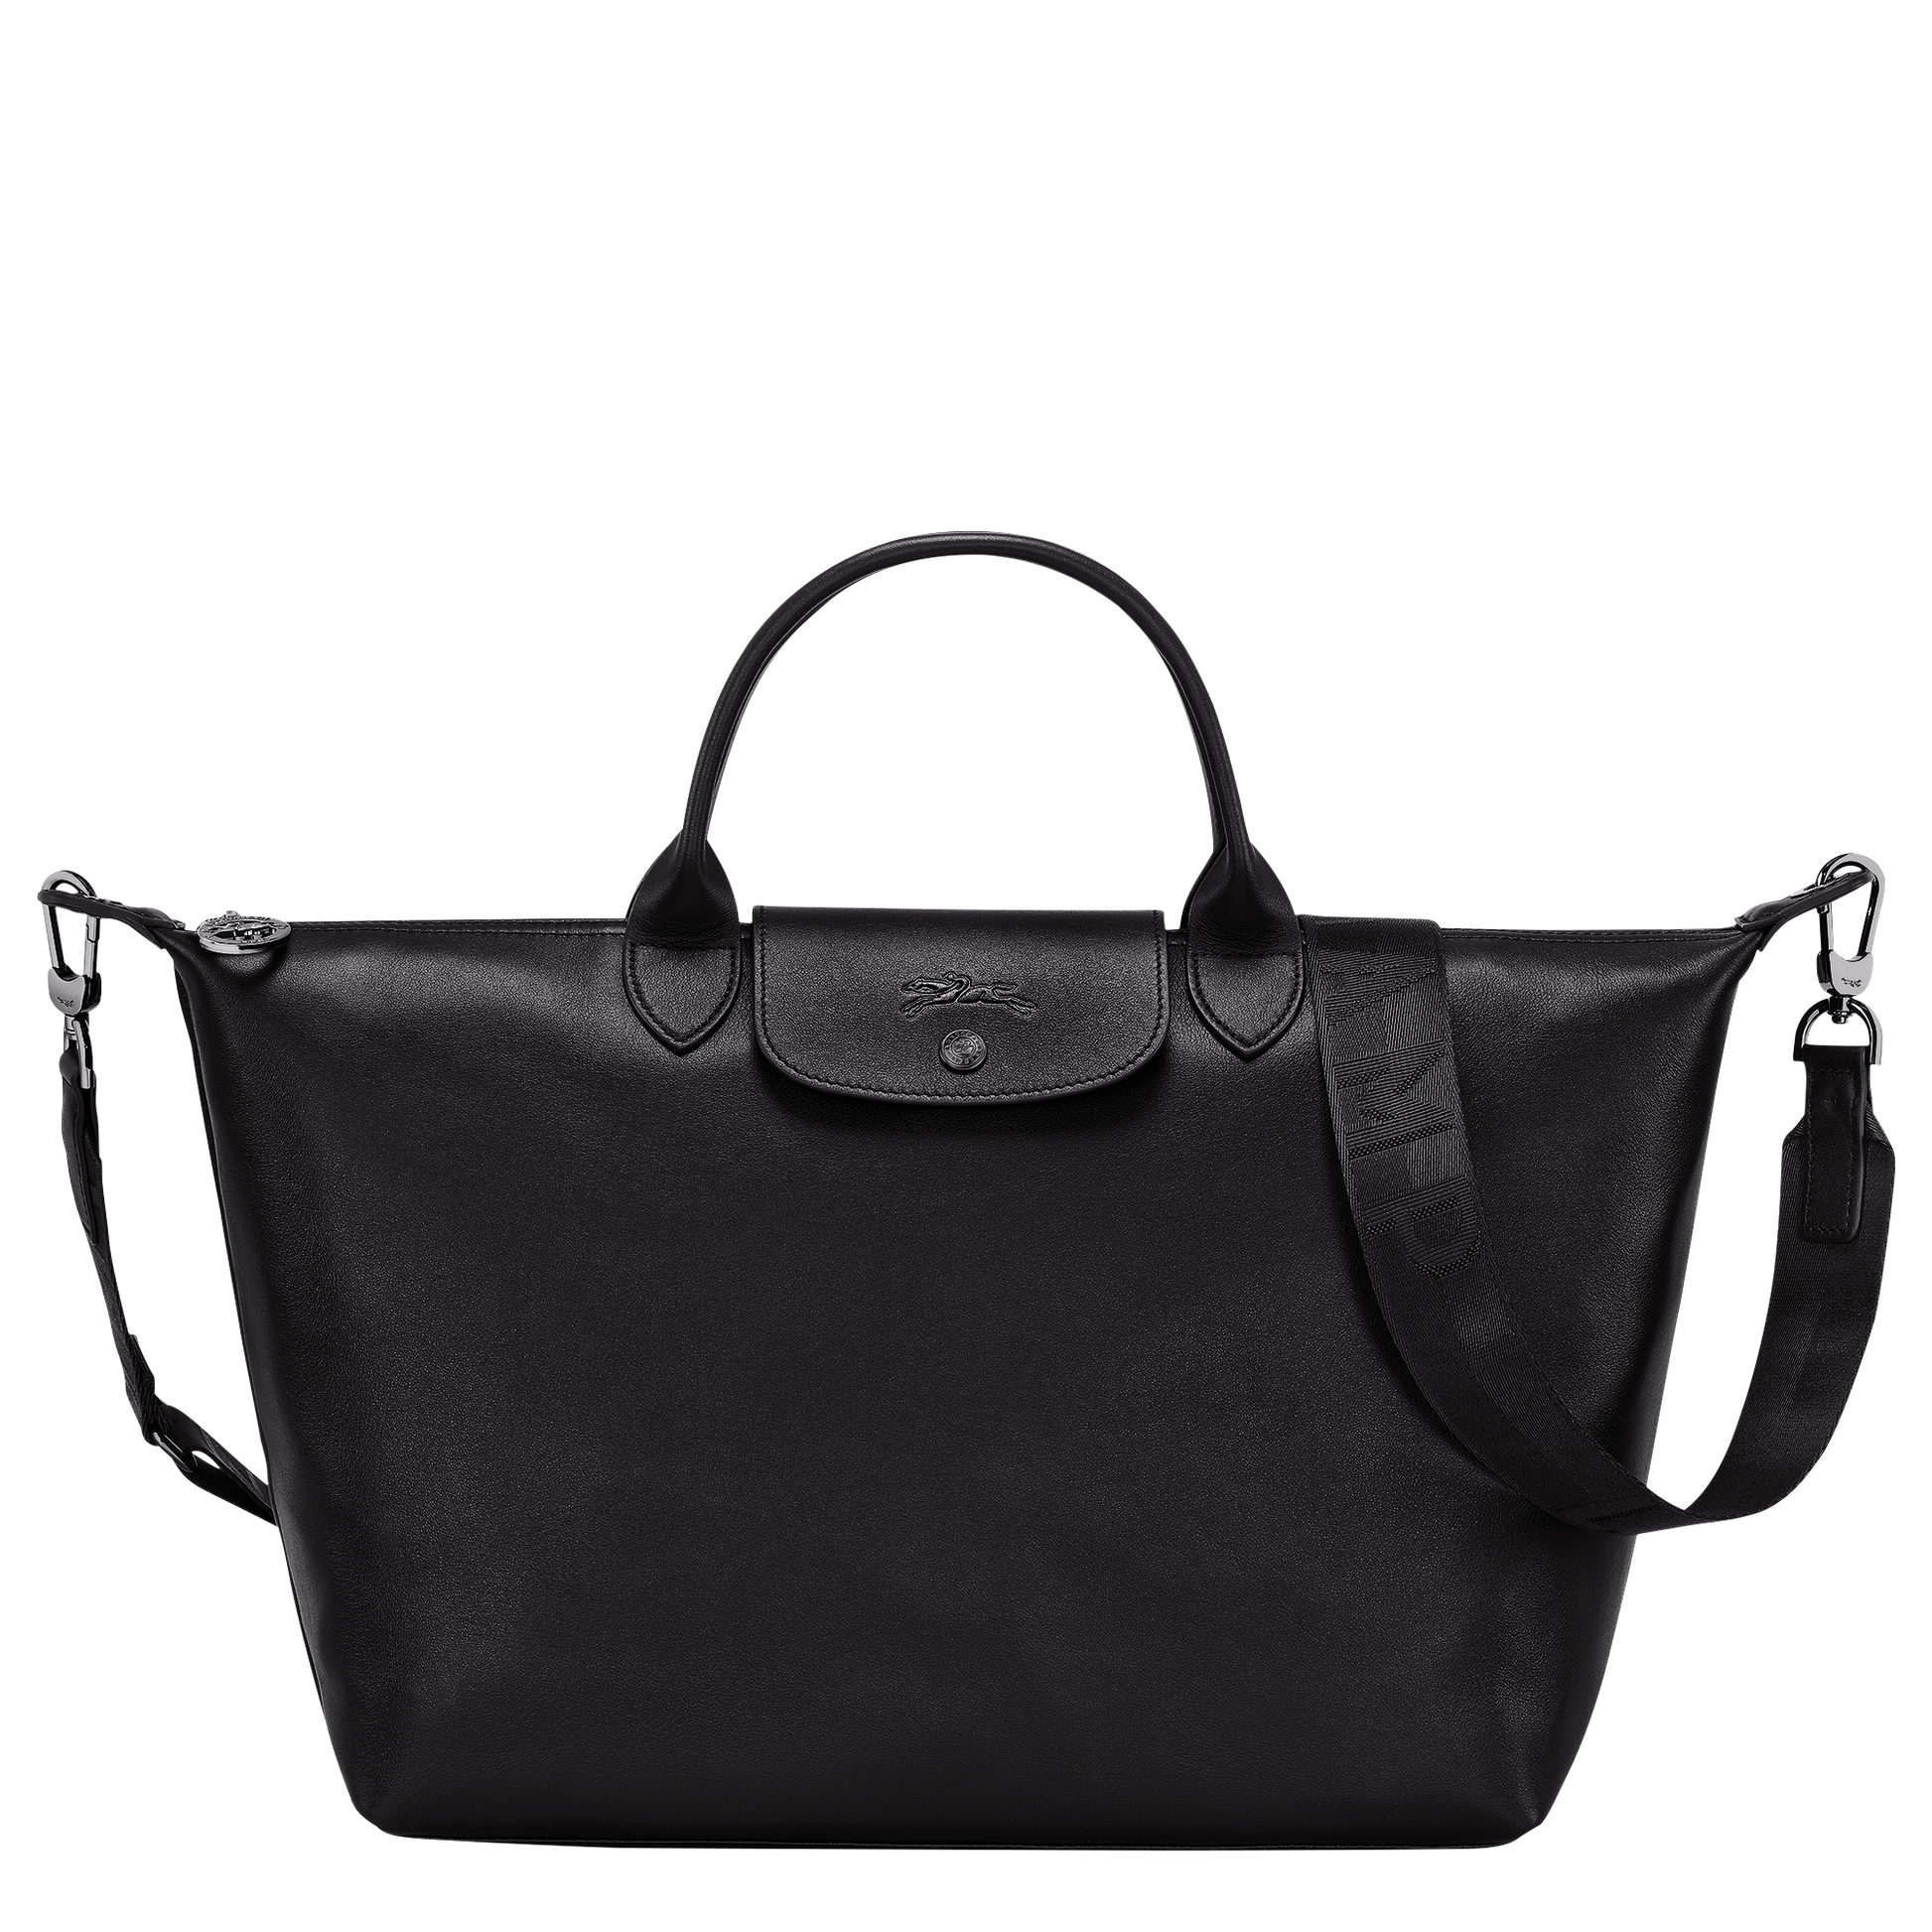 Longchamp Bag Leather Black Factory Sale | website.jkuat.ac.ke